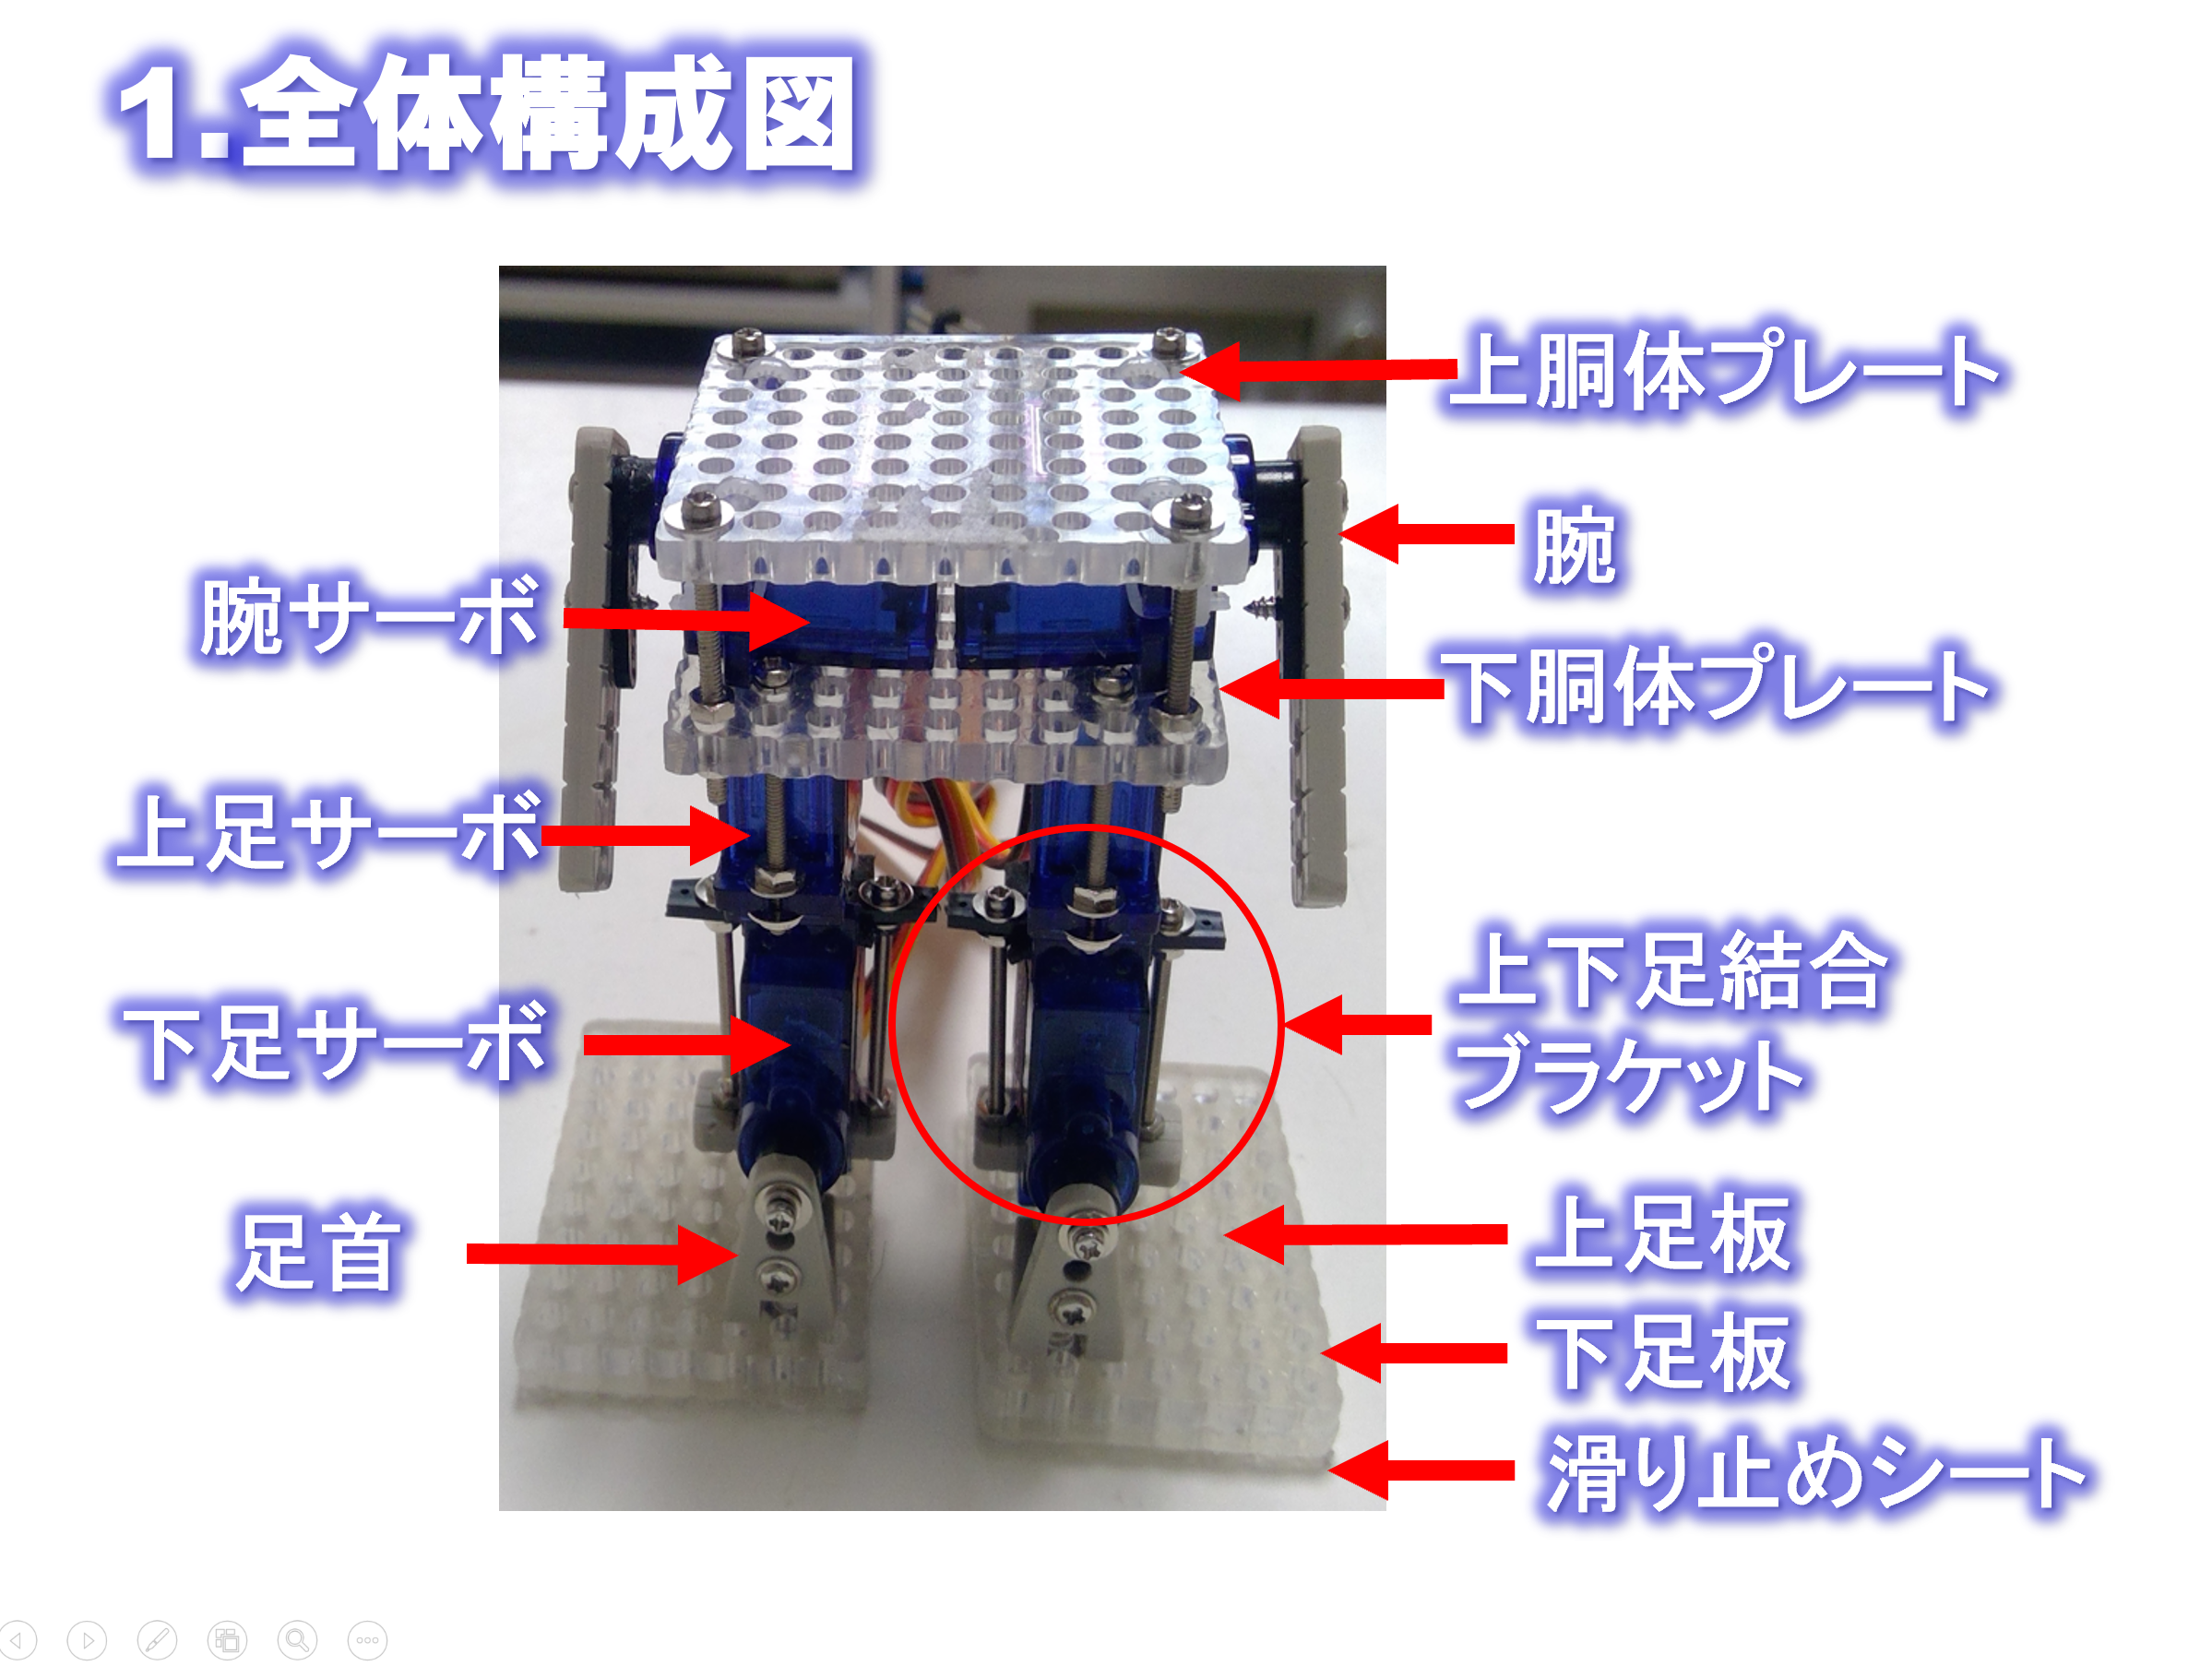 組み立て 2足歩行ロボット-1.png